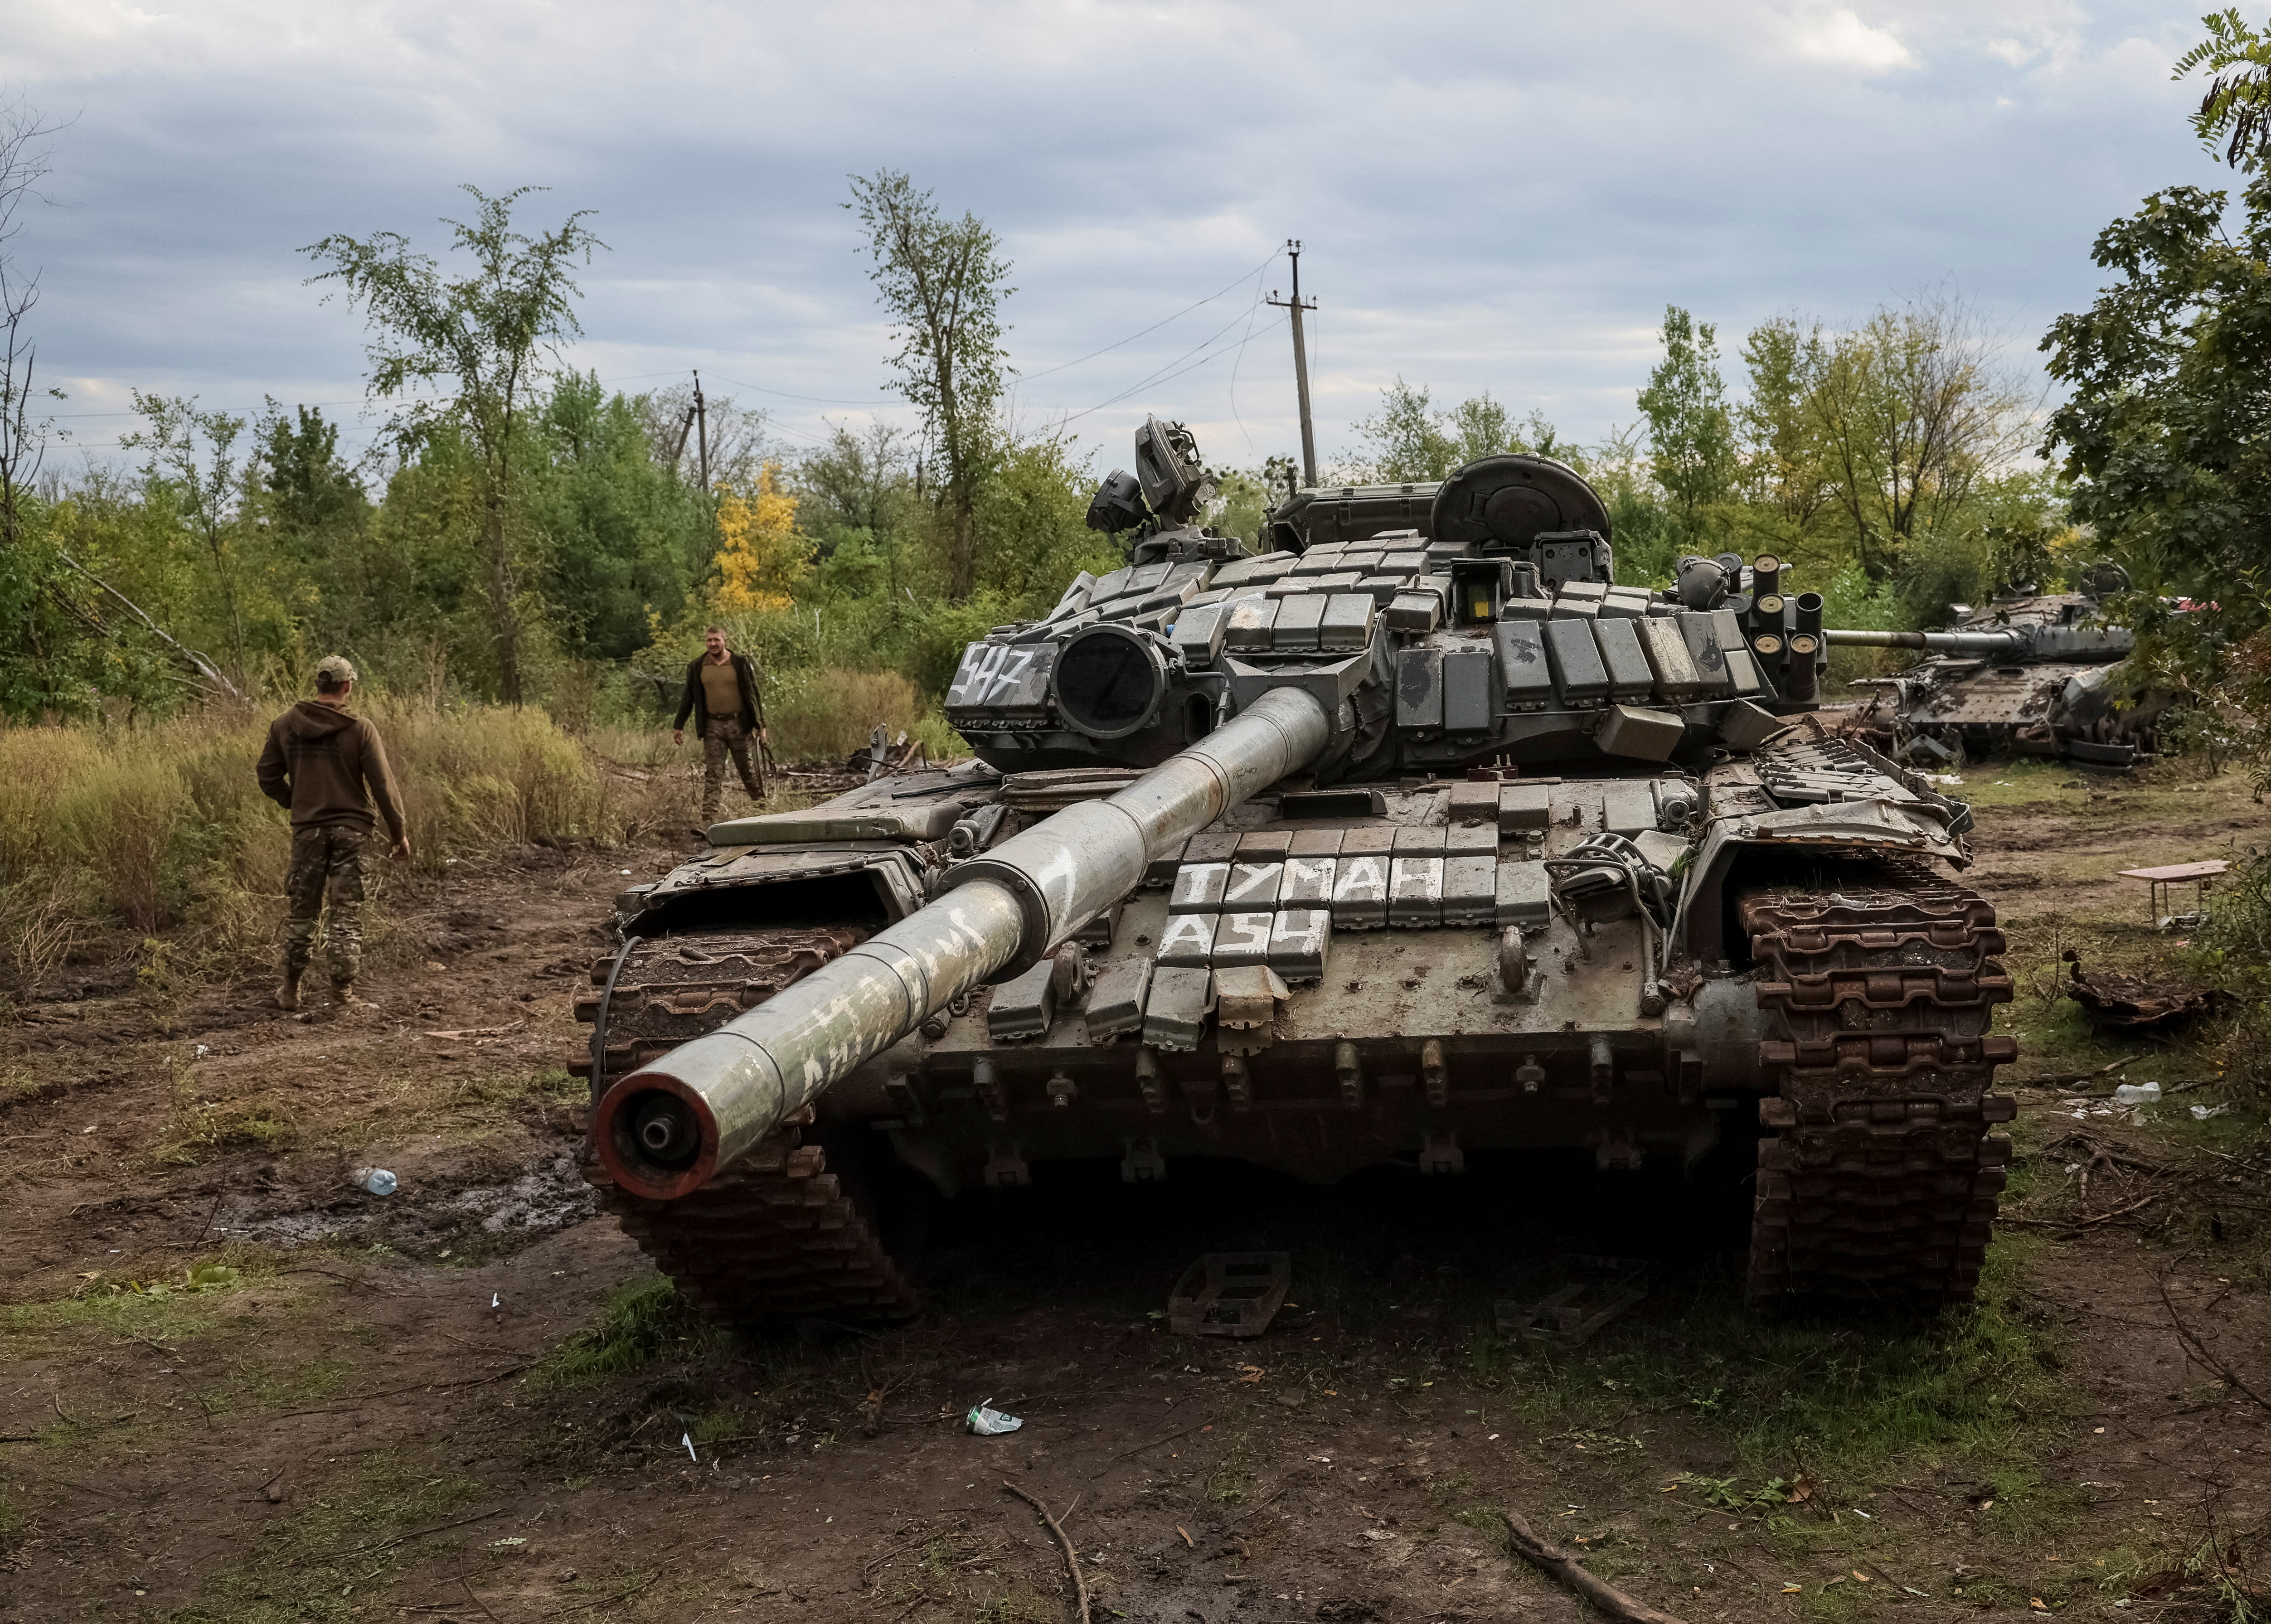 Hãy xem hình ảnh về chiếc xe tăng T-90 đầy uy lực, được trang bị những loại vũ khí hiện đại và đáng sợ nhất hiện nay.